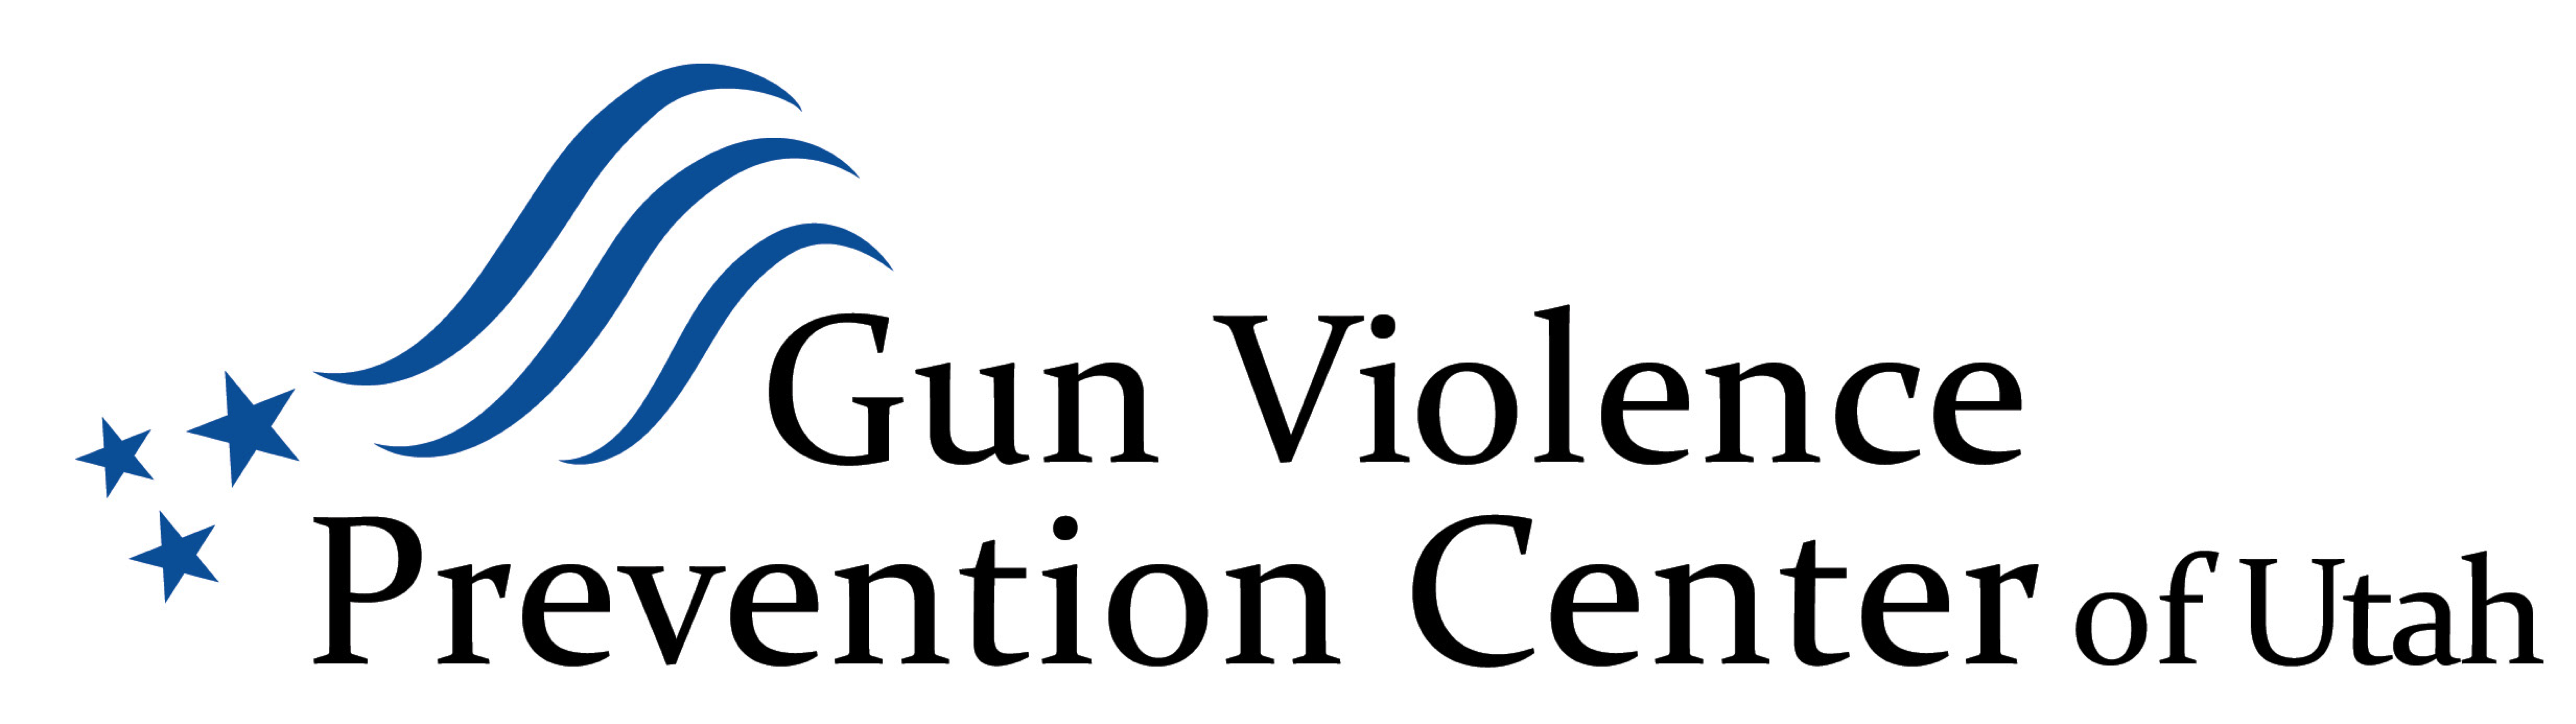 Gun Violence Prevention Center of Utah Logo